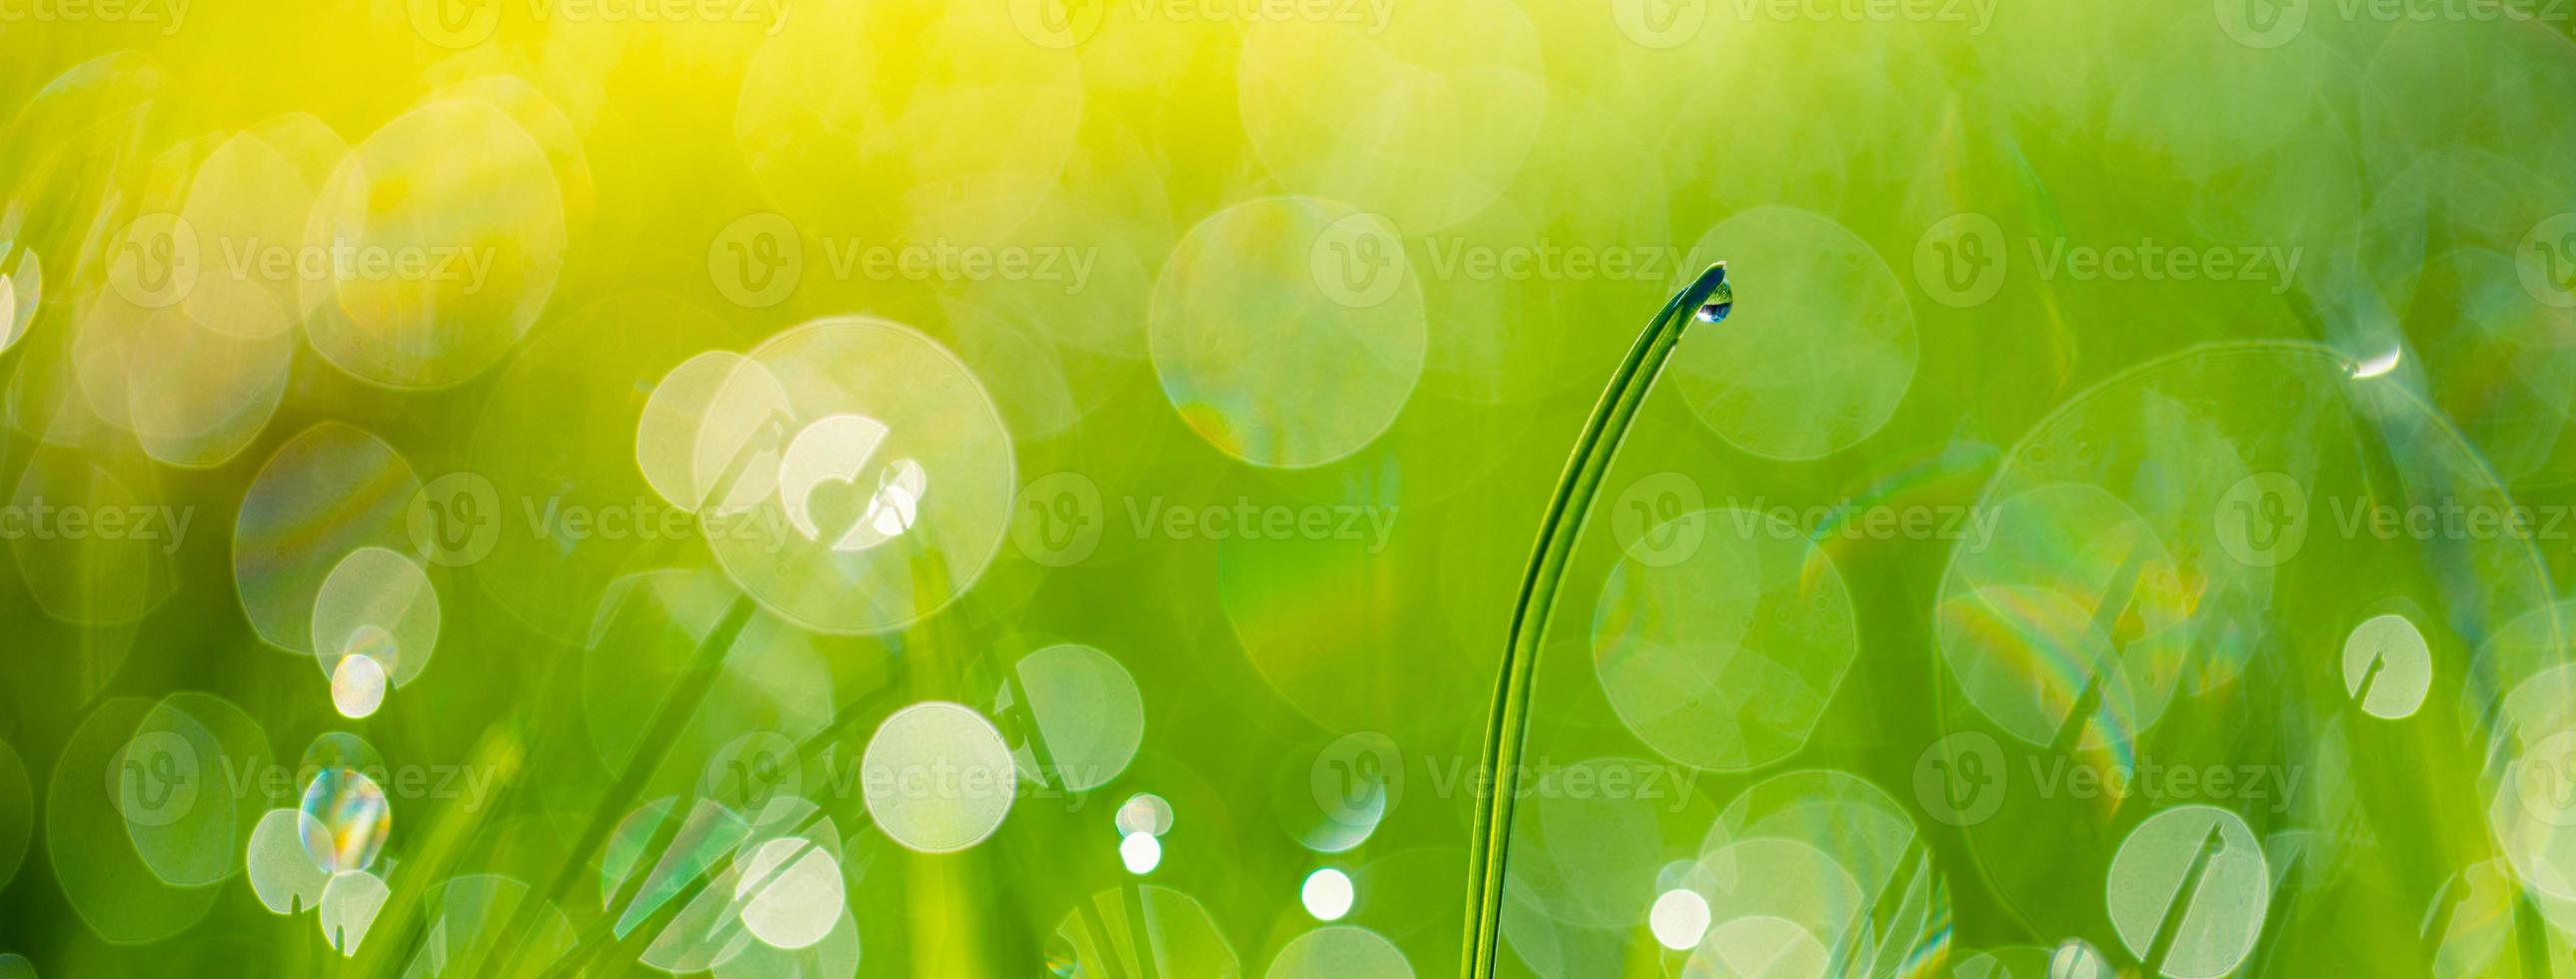 groen gras abstract wazig achtergrond. mooi groen gras in zonlicht stralen. ontspannende groen blad macro. helder vers zomer of voorjaar natuur achtergrond. panoramisch natuur banier foto